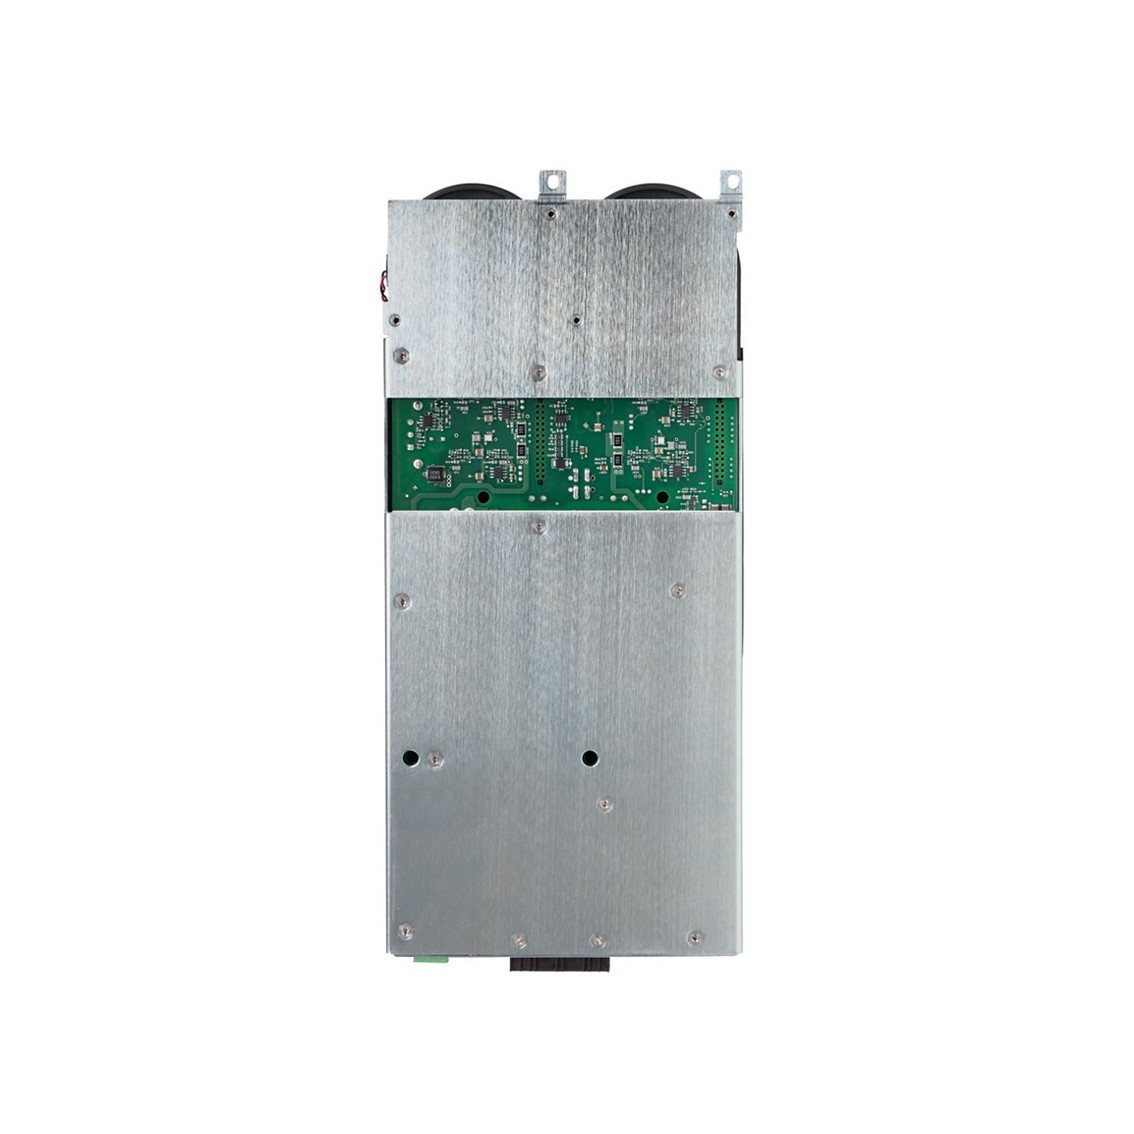 [ KEYSIGHT ] N6753A  고성능 오토레인지 DC 전력 모듈 20V/50A/300W DC Power Module